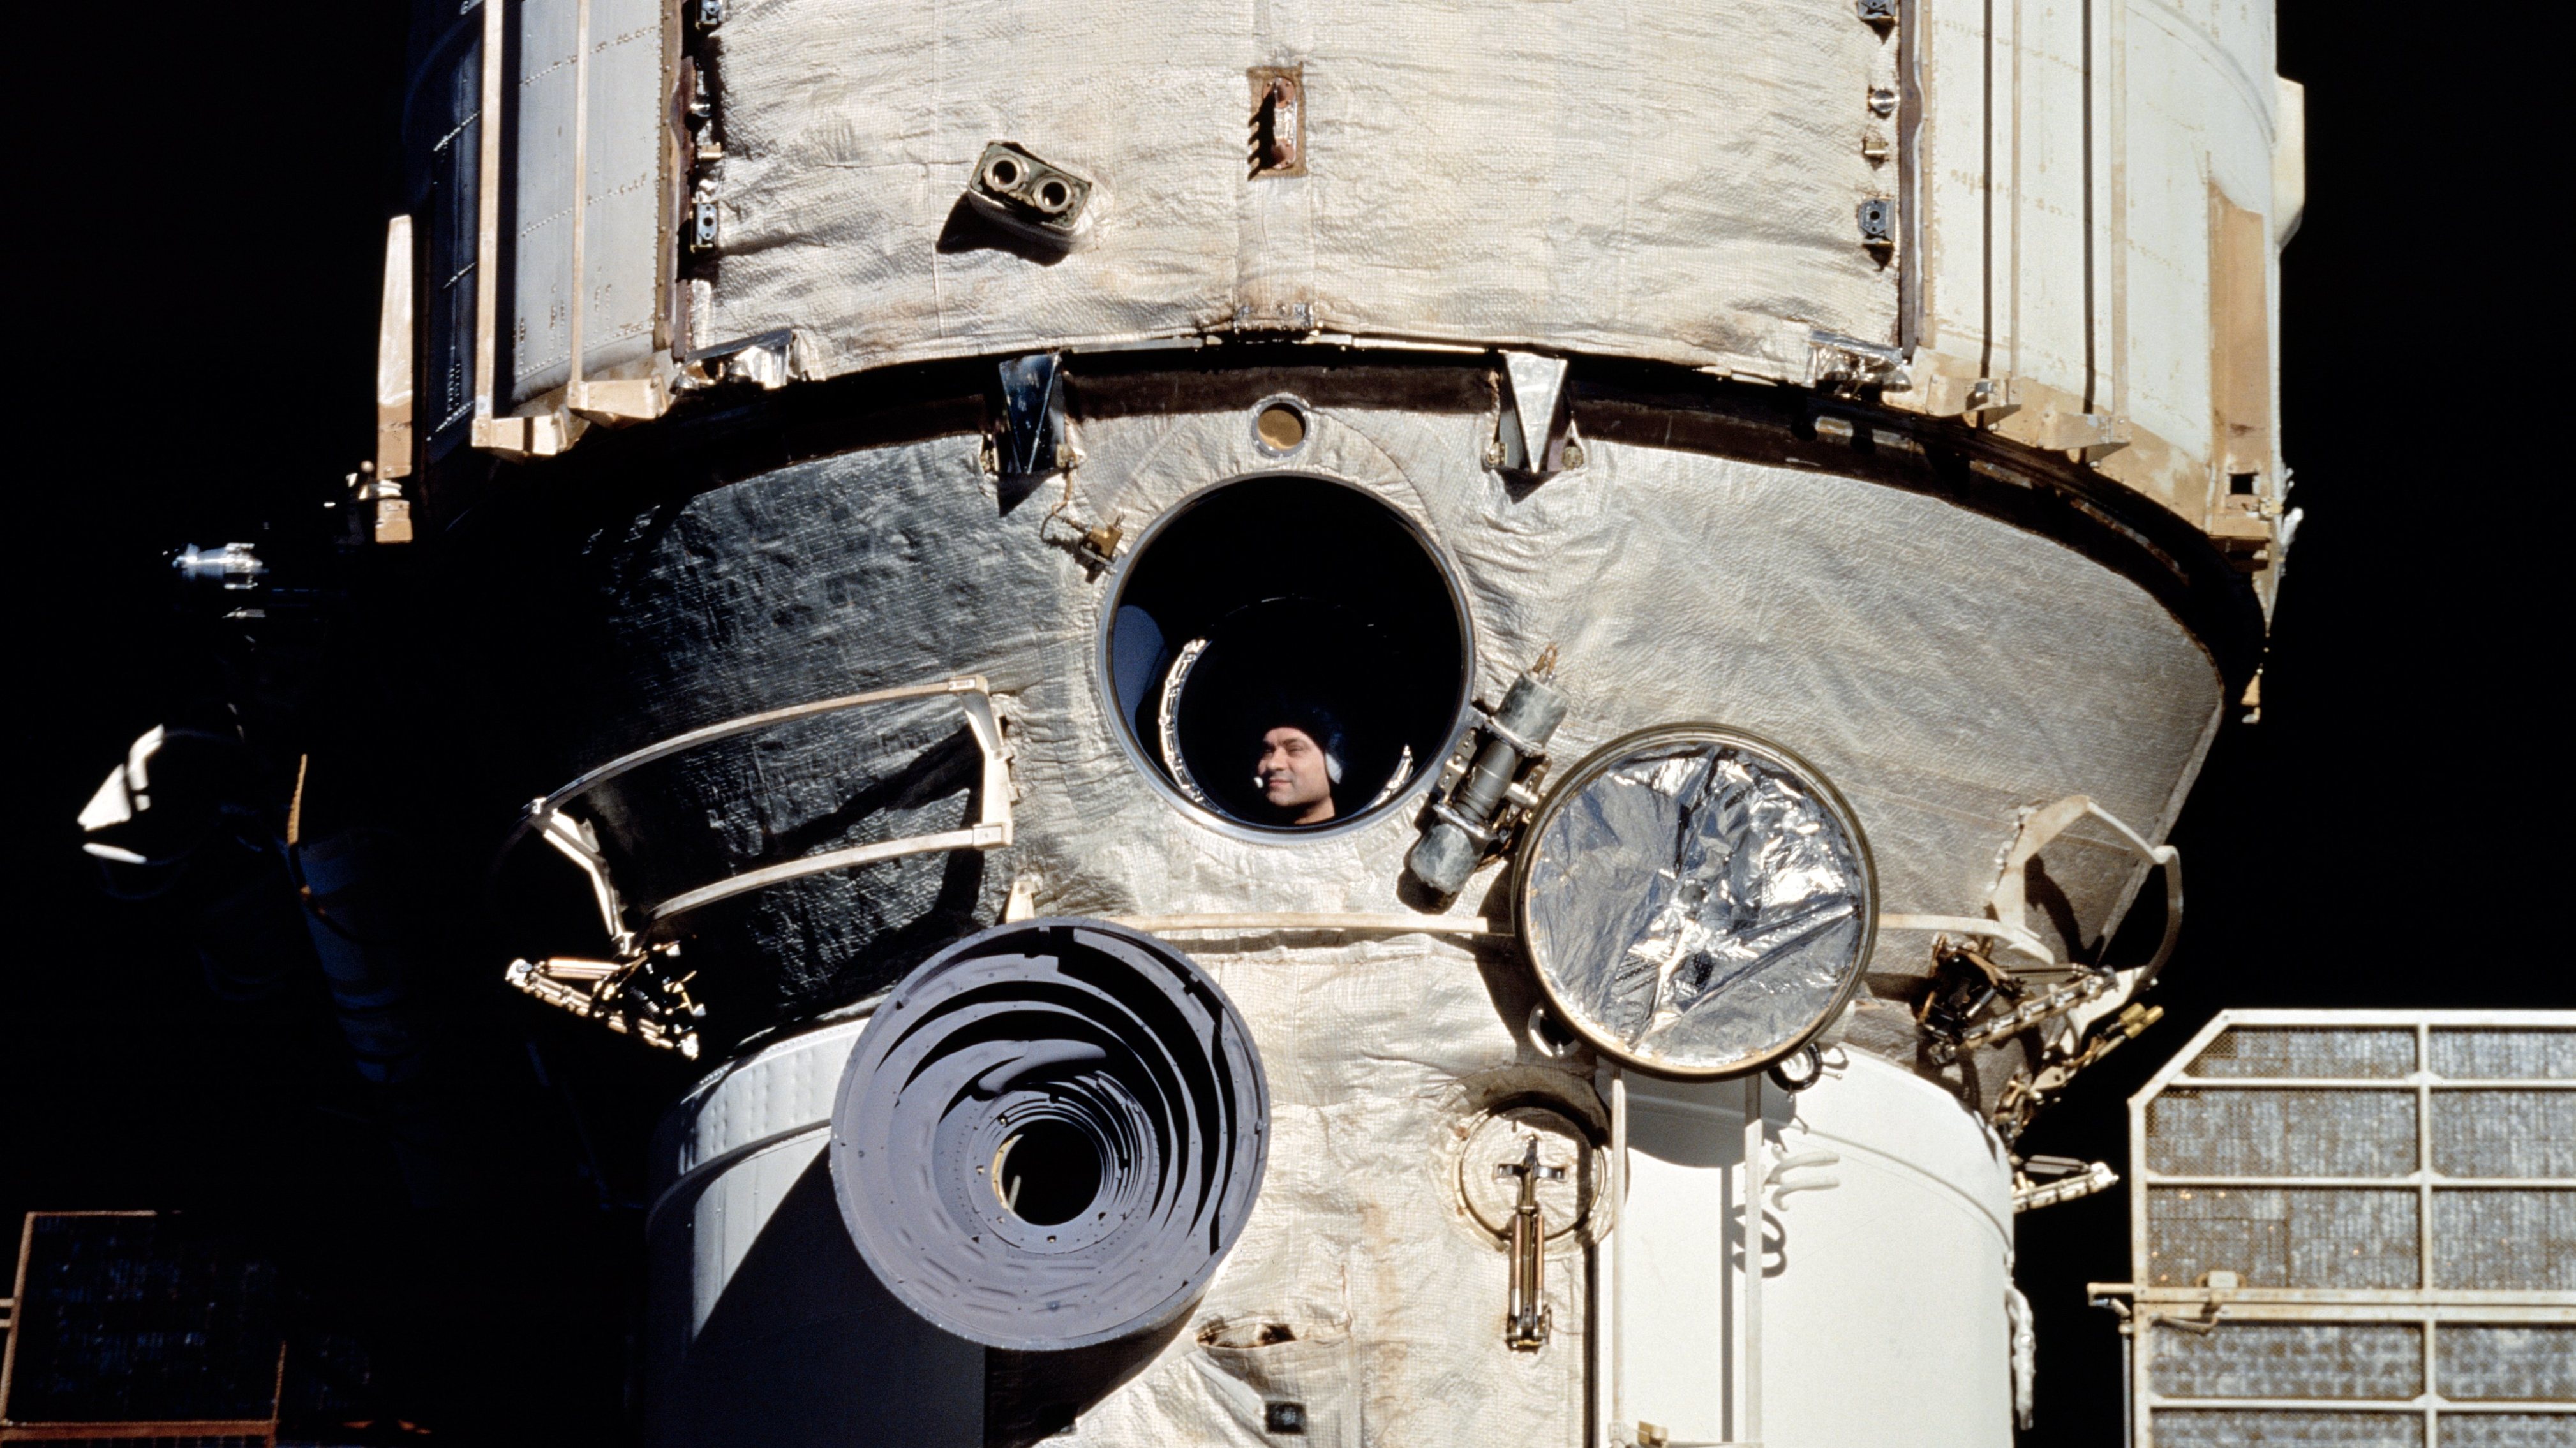 À janela da estação espacial Mir, o cosmonauta Valeri Polyakov aguarda o encontro com a nave espacial norte-americana Discovery